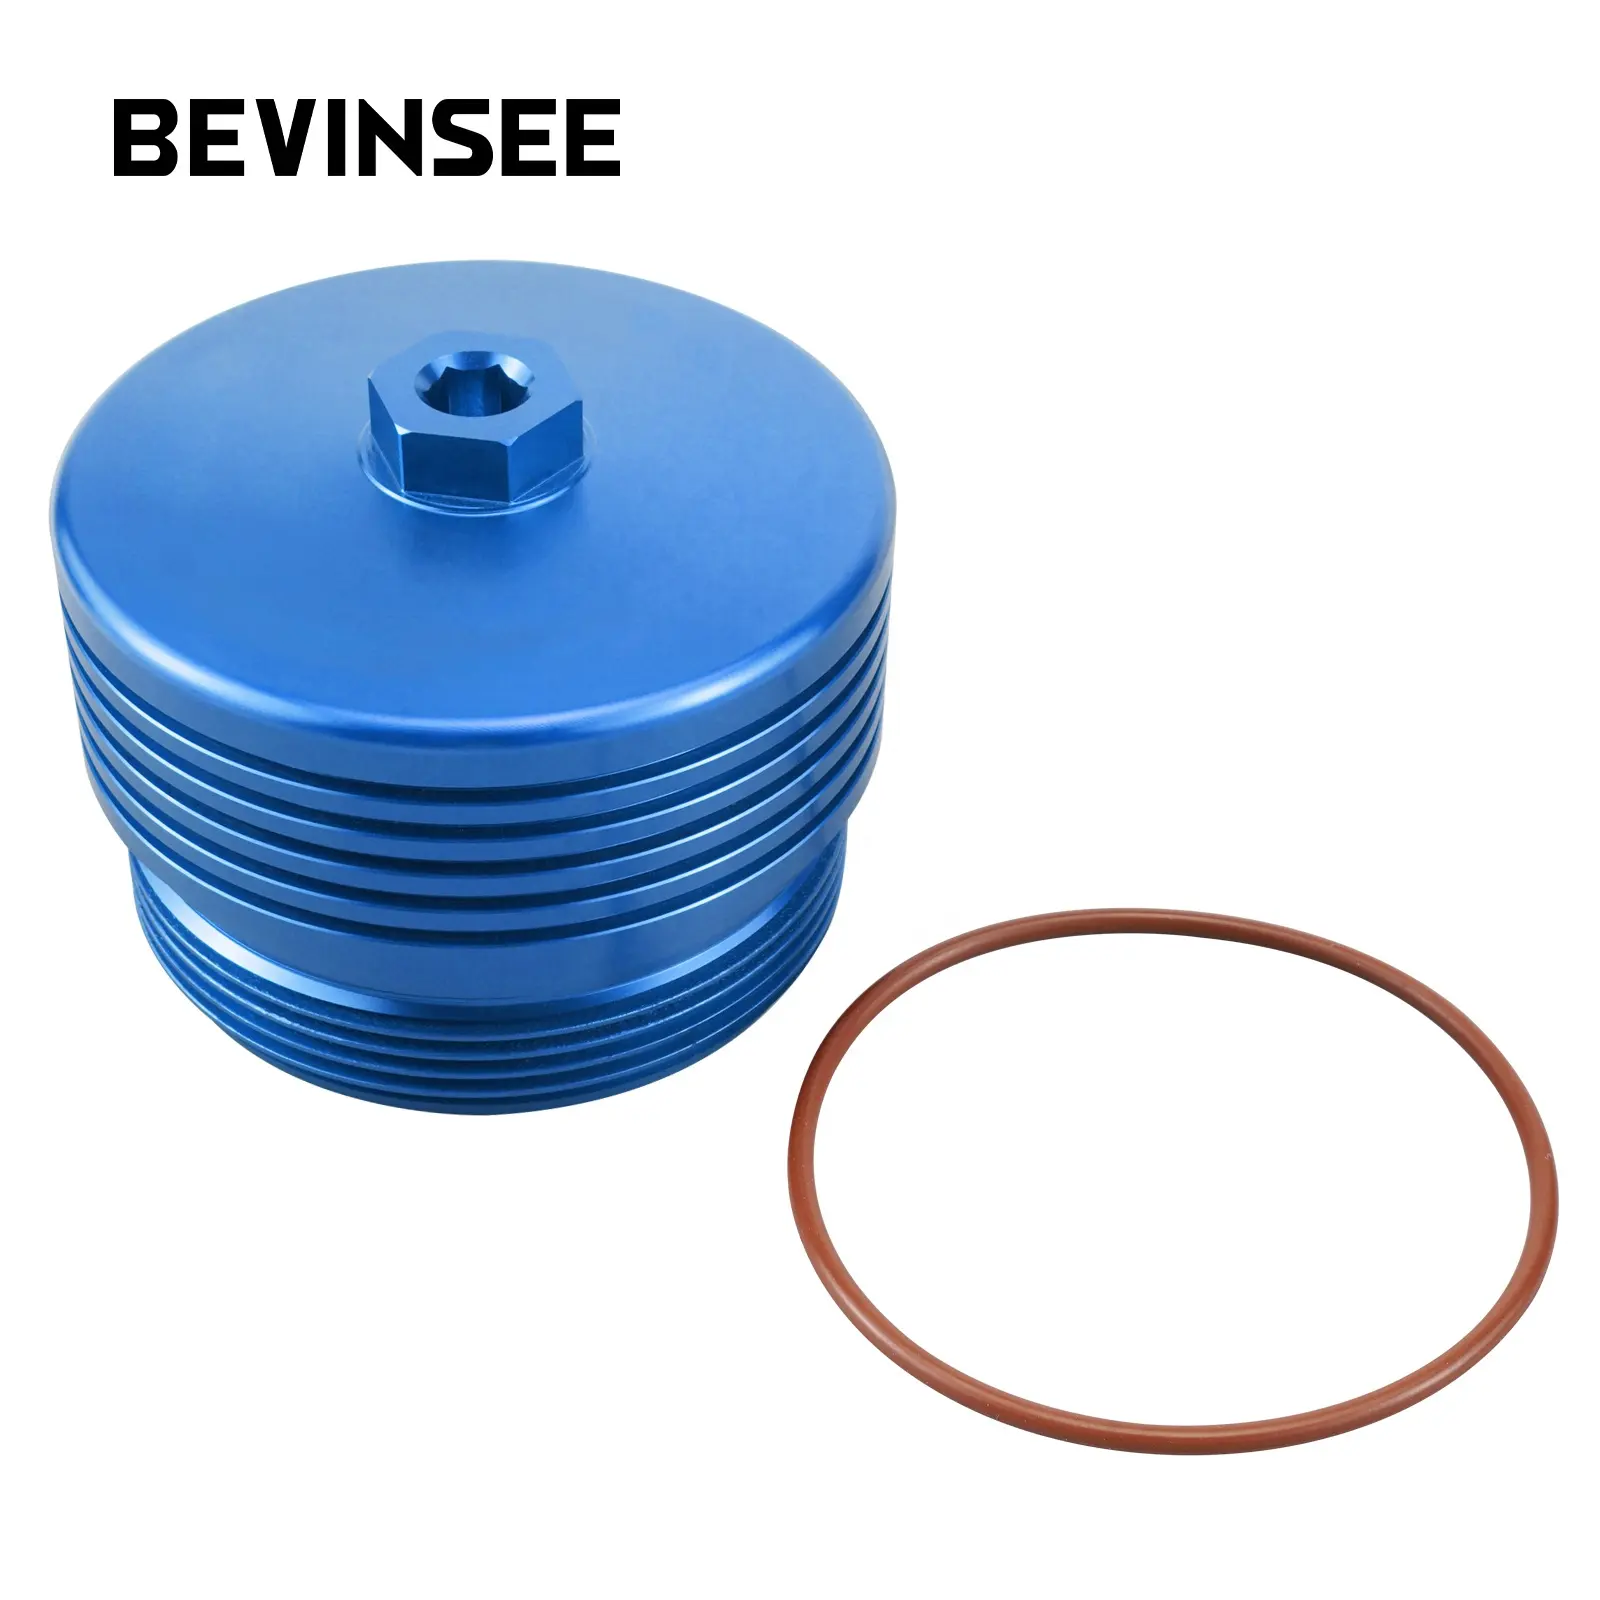 Bevinsee Aluminium Oliefilter Cover Cap W/Seal O-Ring Voor Bmw 335i 135i 535i X 3X5 N54 N55 S55 N20 N26 N51 N52